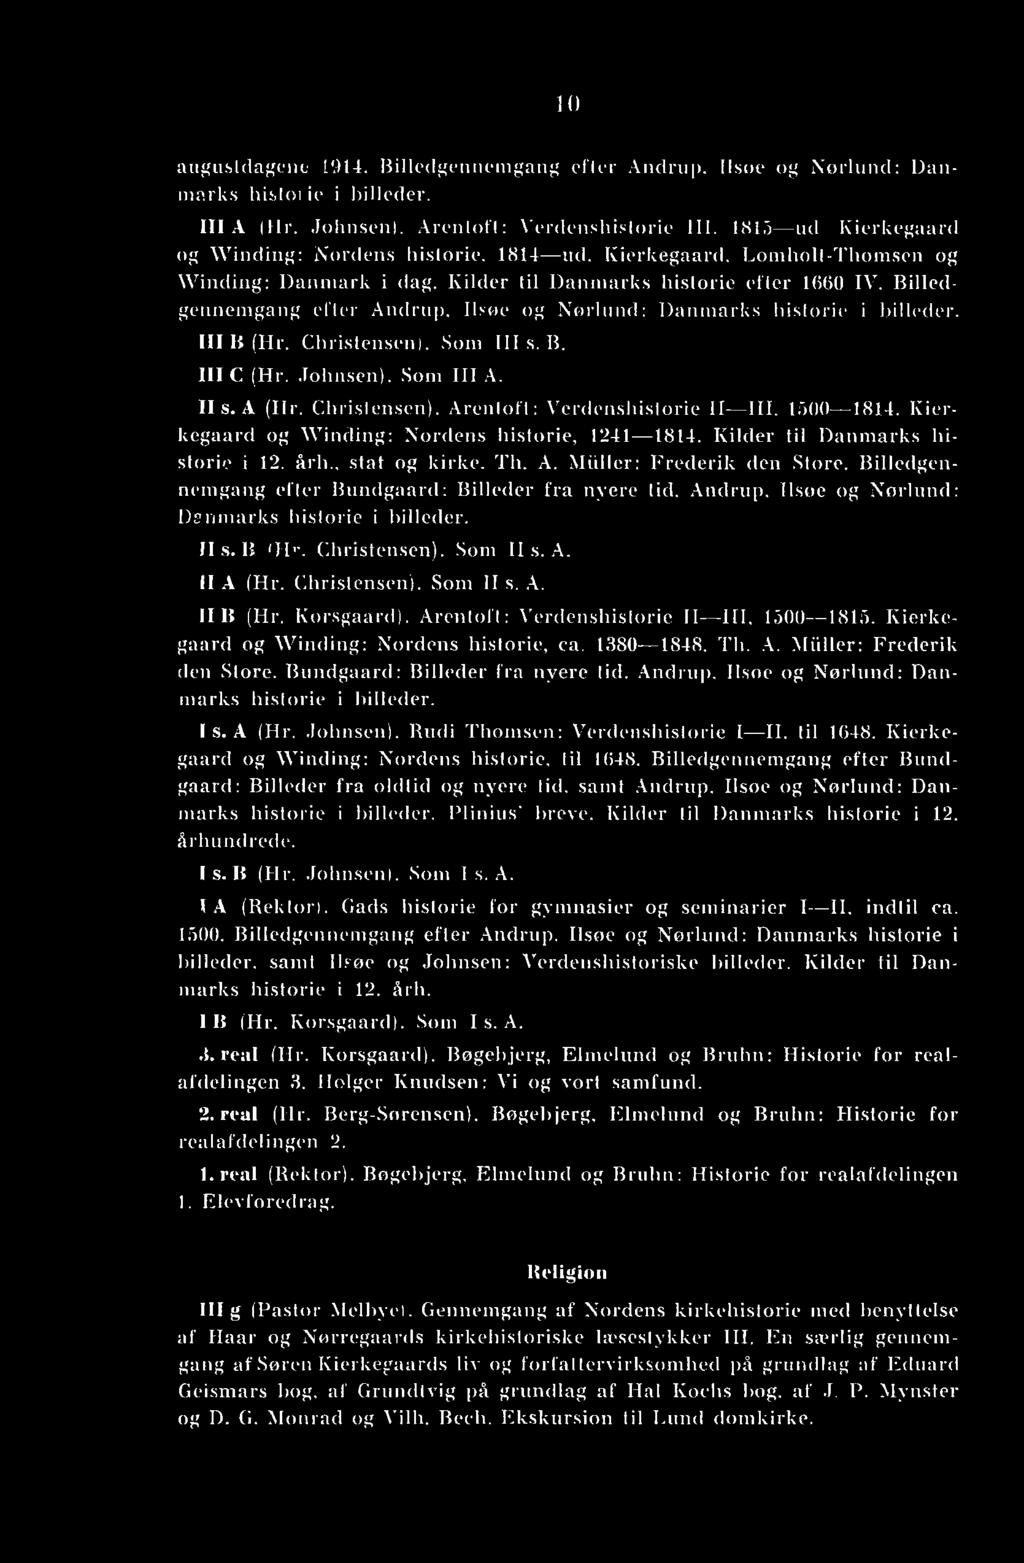 Billedgennemgang efter Andrup, Ilsøe og Nørlund: Danmarks historie i billeder. Ill B (Hr. Christensen). Som His. B. III C (Hr. Johnsen). Som III A. II s. A (Hr. Christensen). Arentoft: Verdenshistorie II III, 1500 1814.